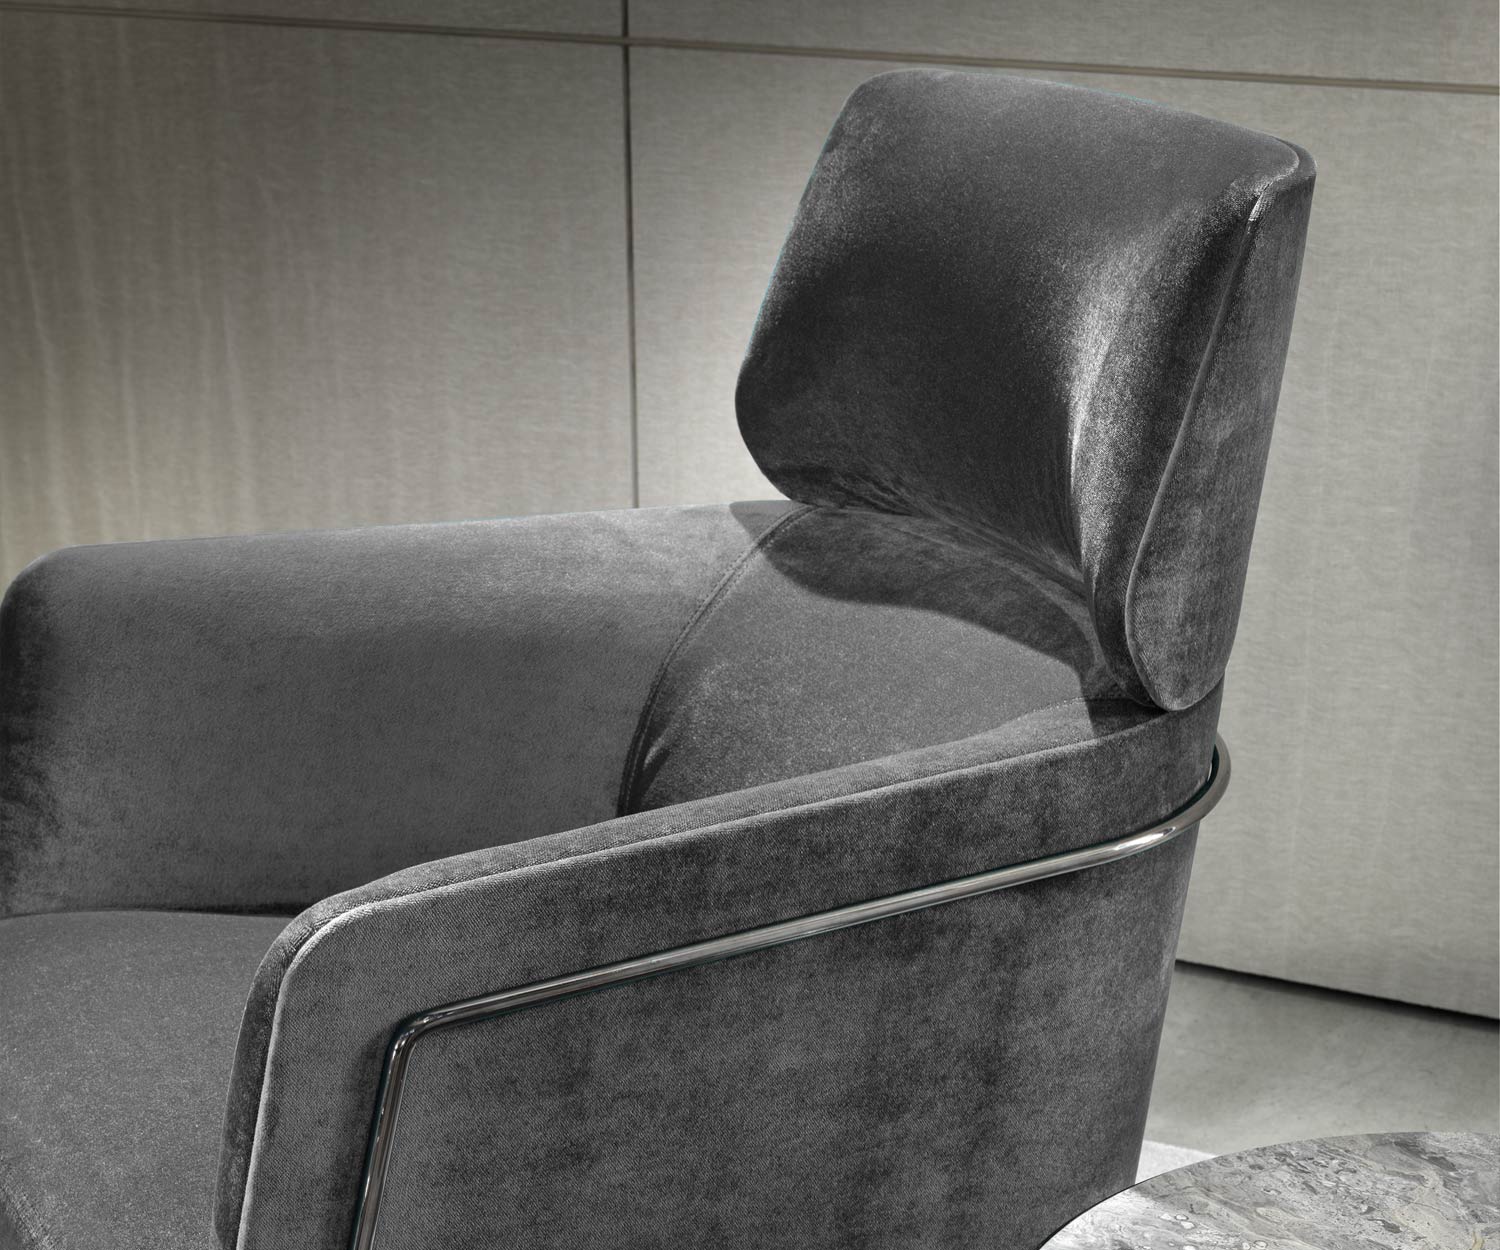 Exclusieve Marelli Nest design fauteuil metalen frame chroom zwart